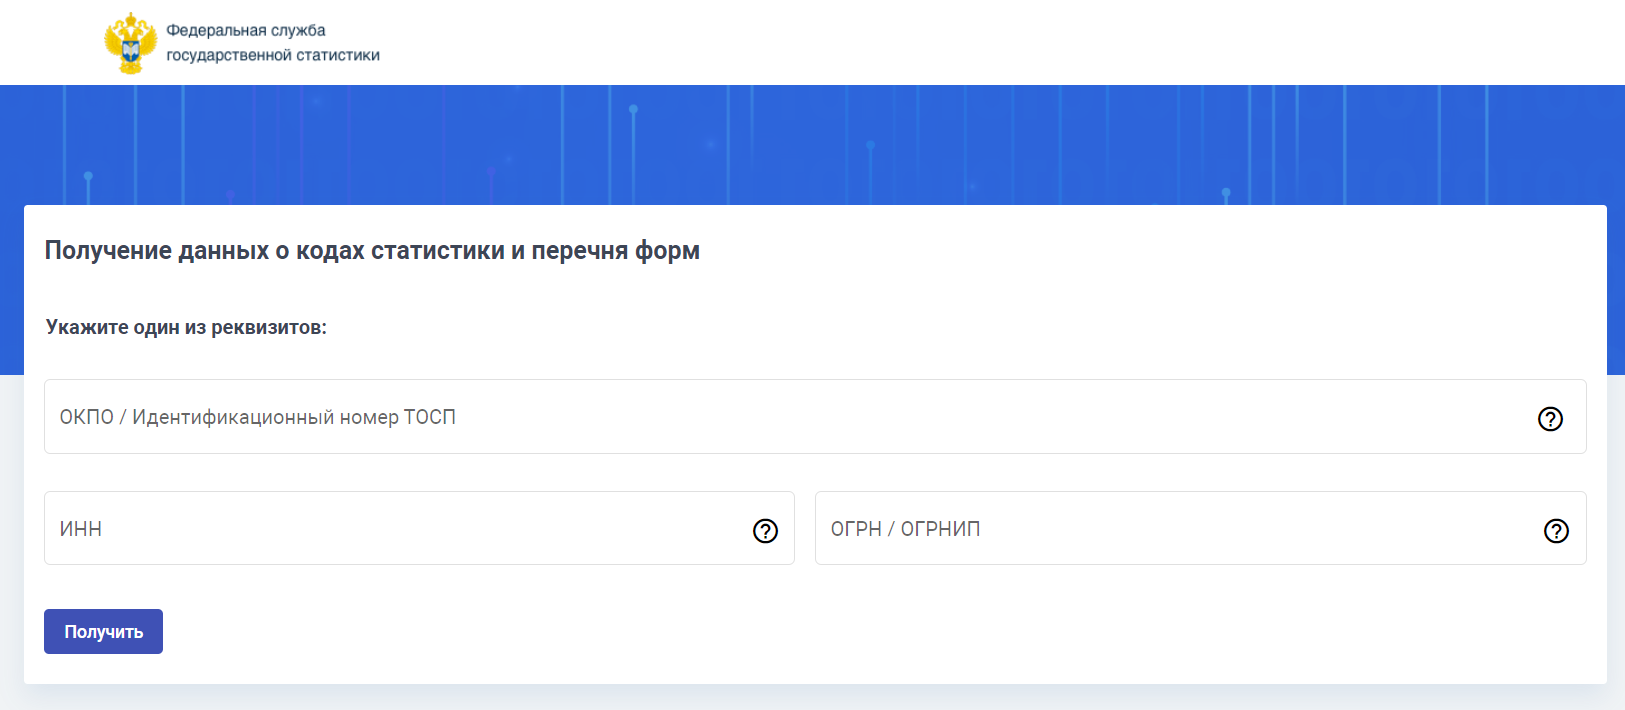 Websbor gks ru. Проверено в Росстате. Статистическая отчётность в 2022 году.